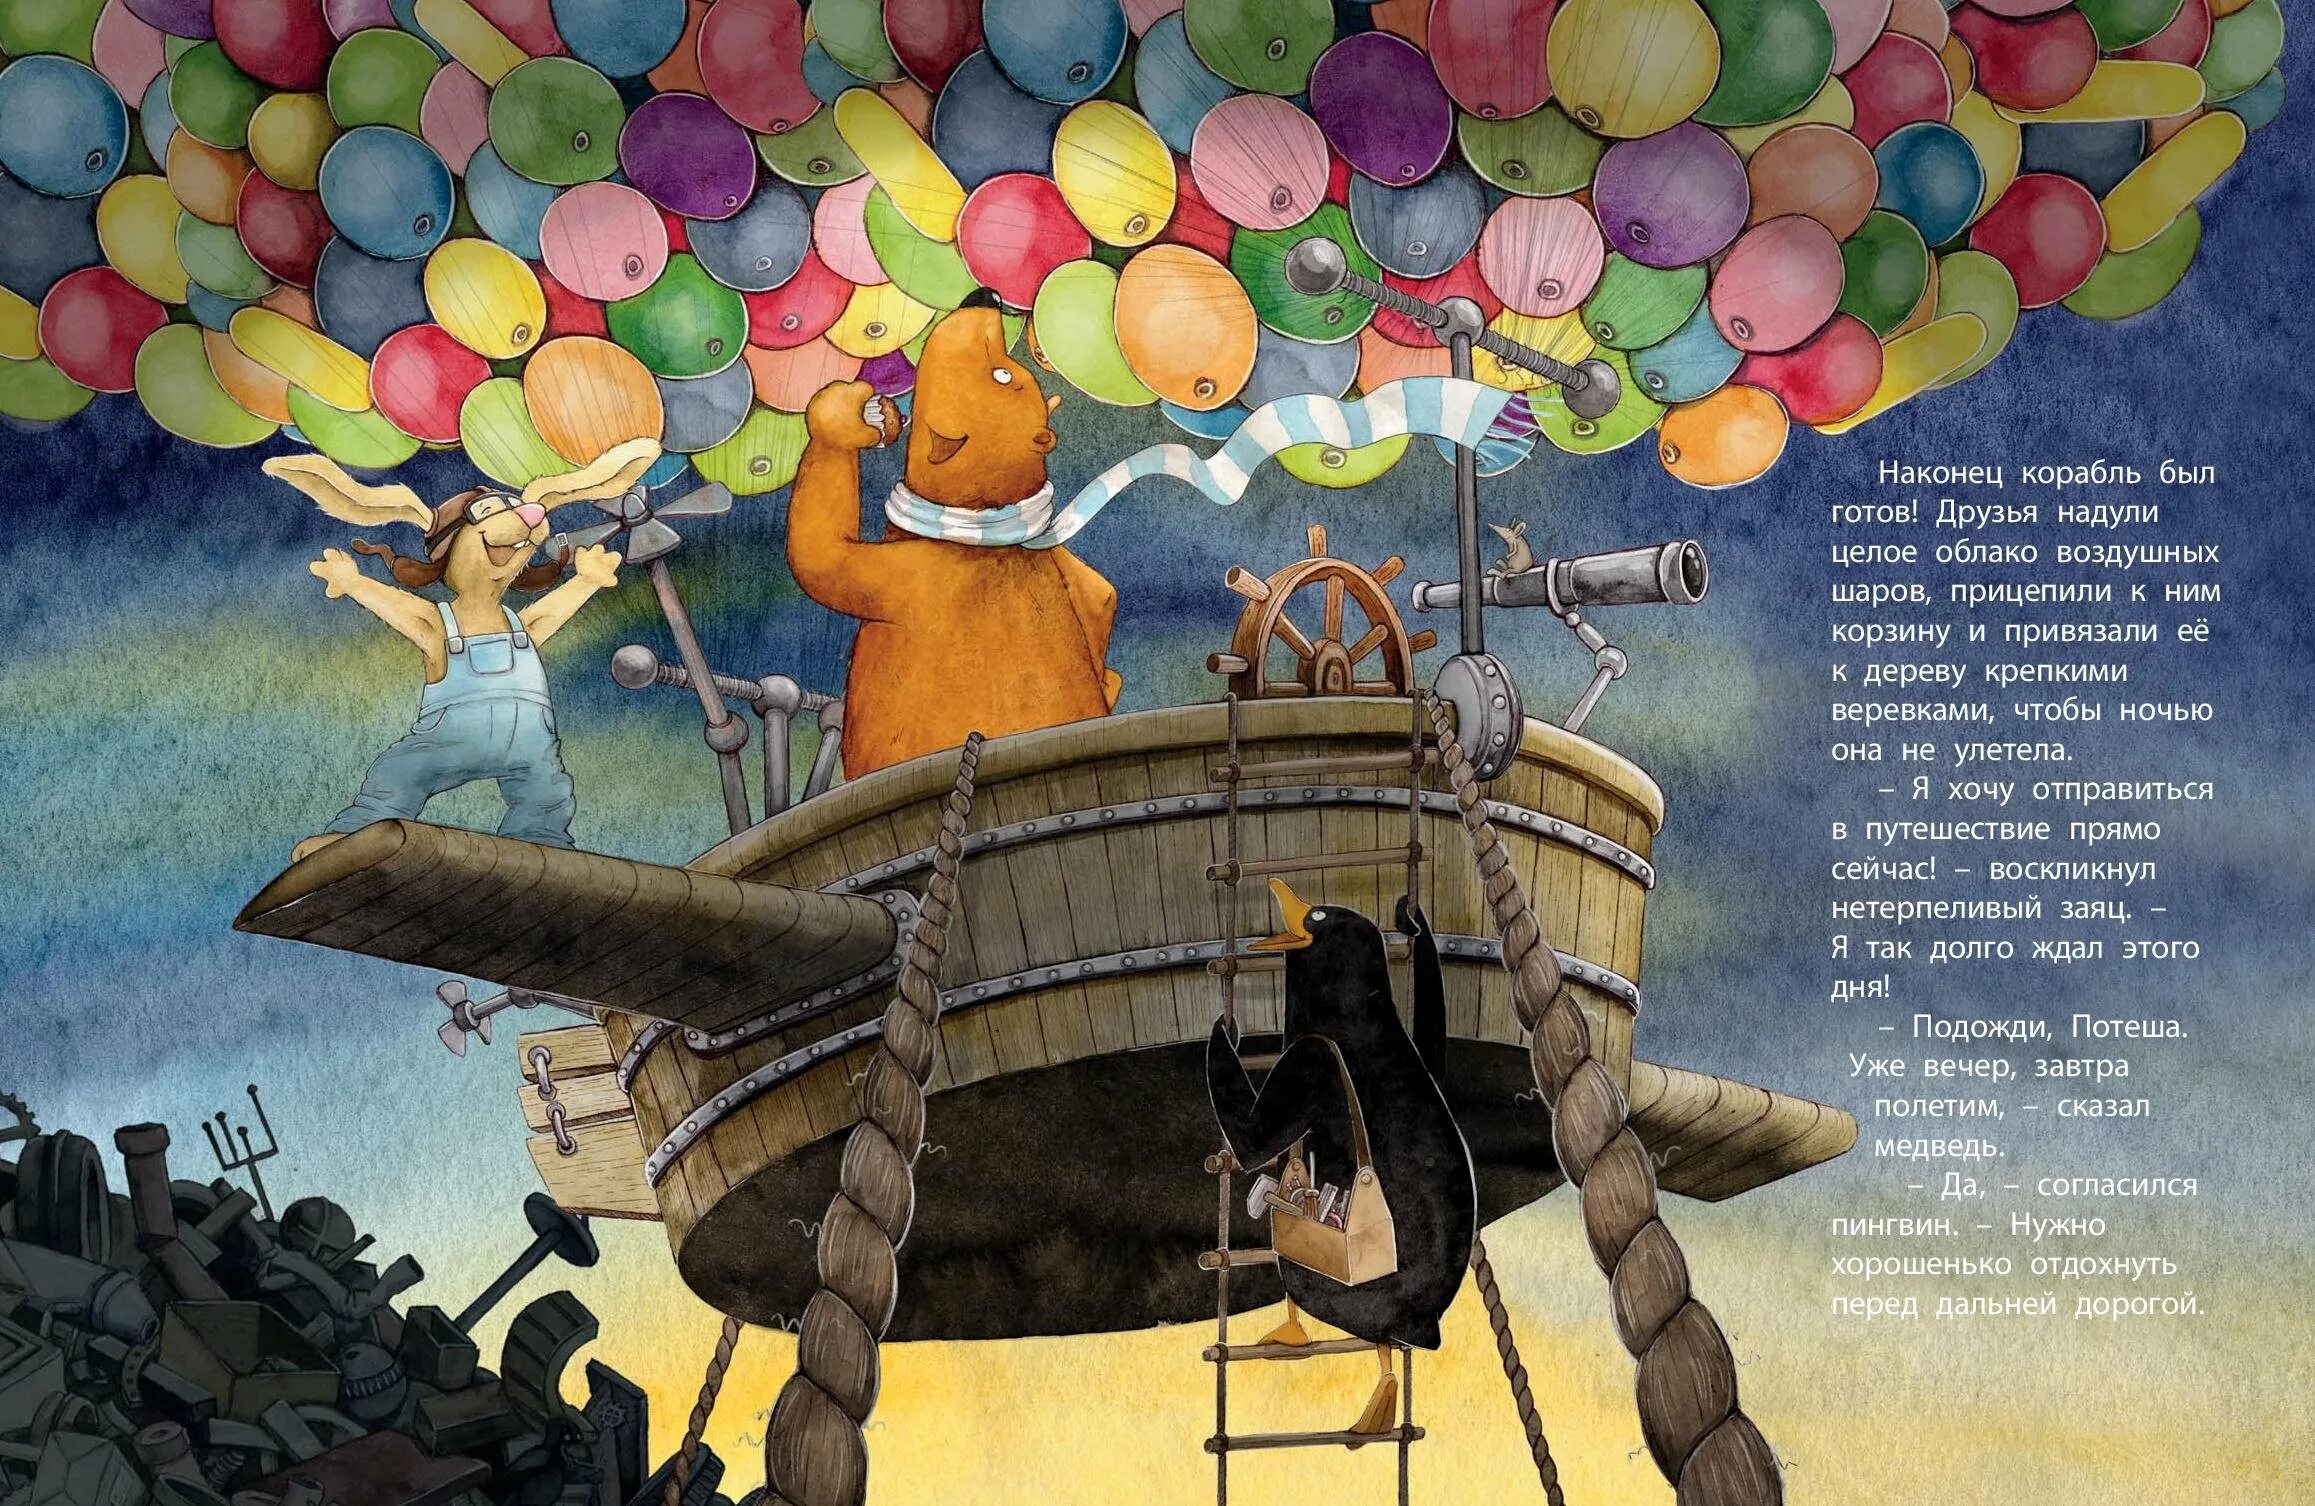 Приключения на шаре. Путешествие на воздушных шариках ЭНАС-книга. Путешествие на воздушных шариках. Путешествие на воздушных шарах книга. День путешествия на воздушном шаре.